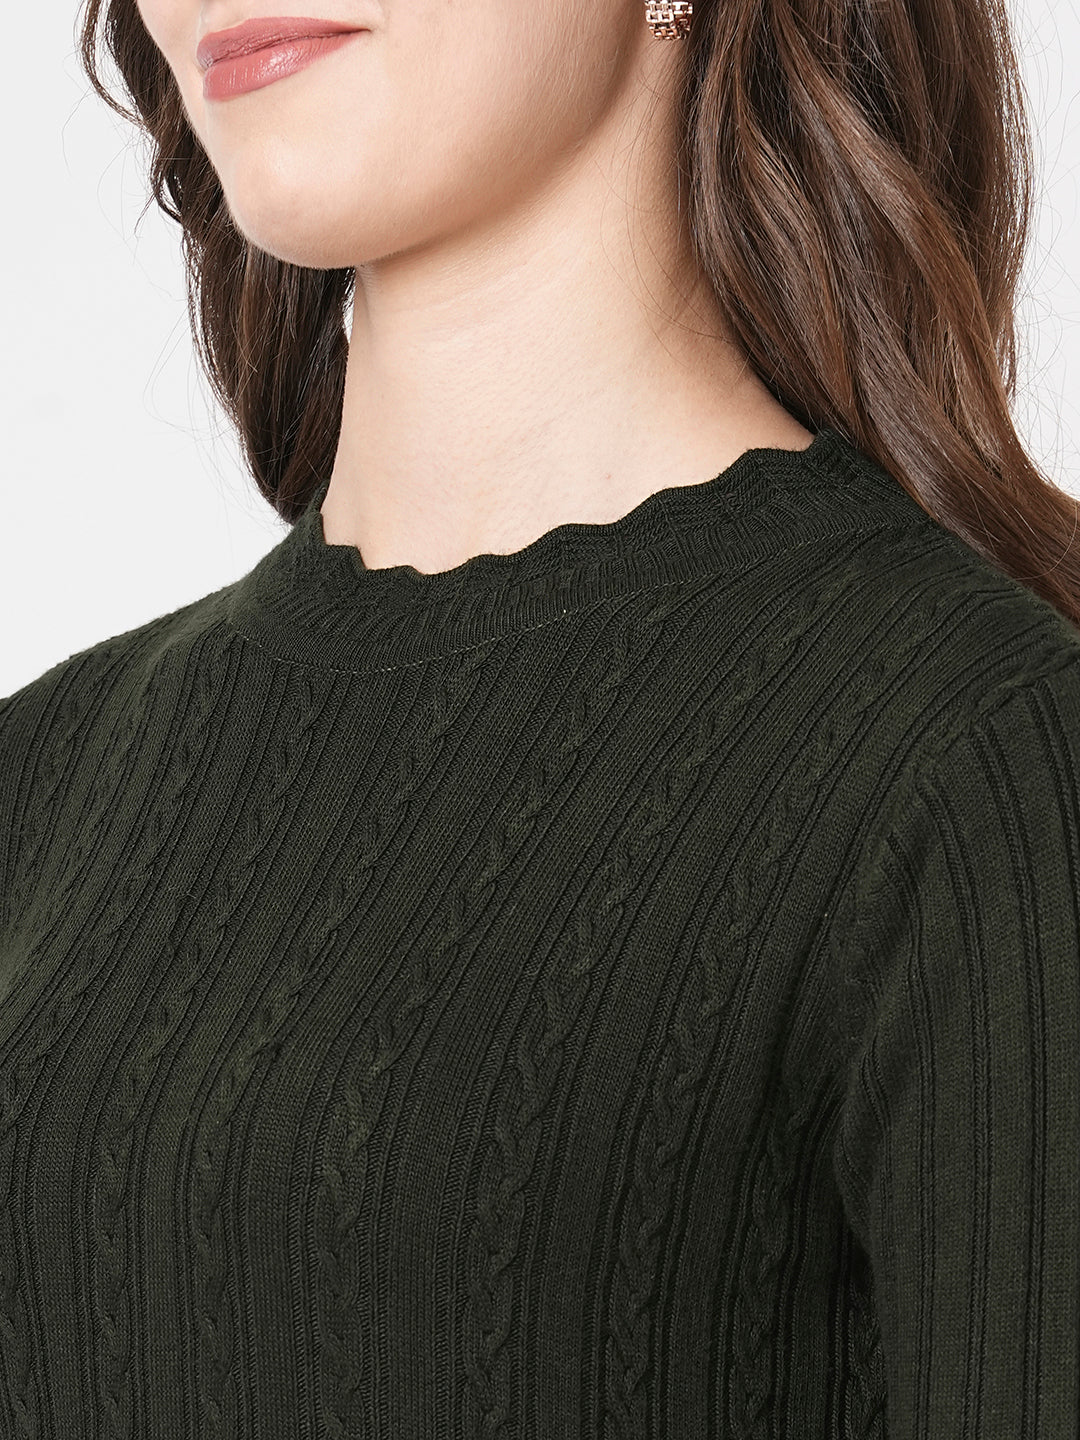 Women Solid Casual Wear Sweater